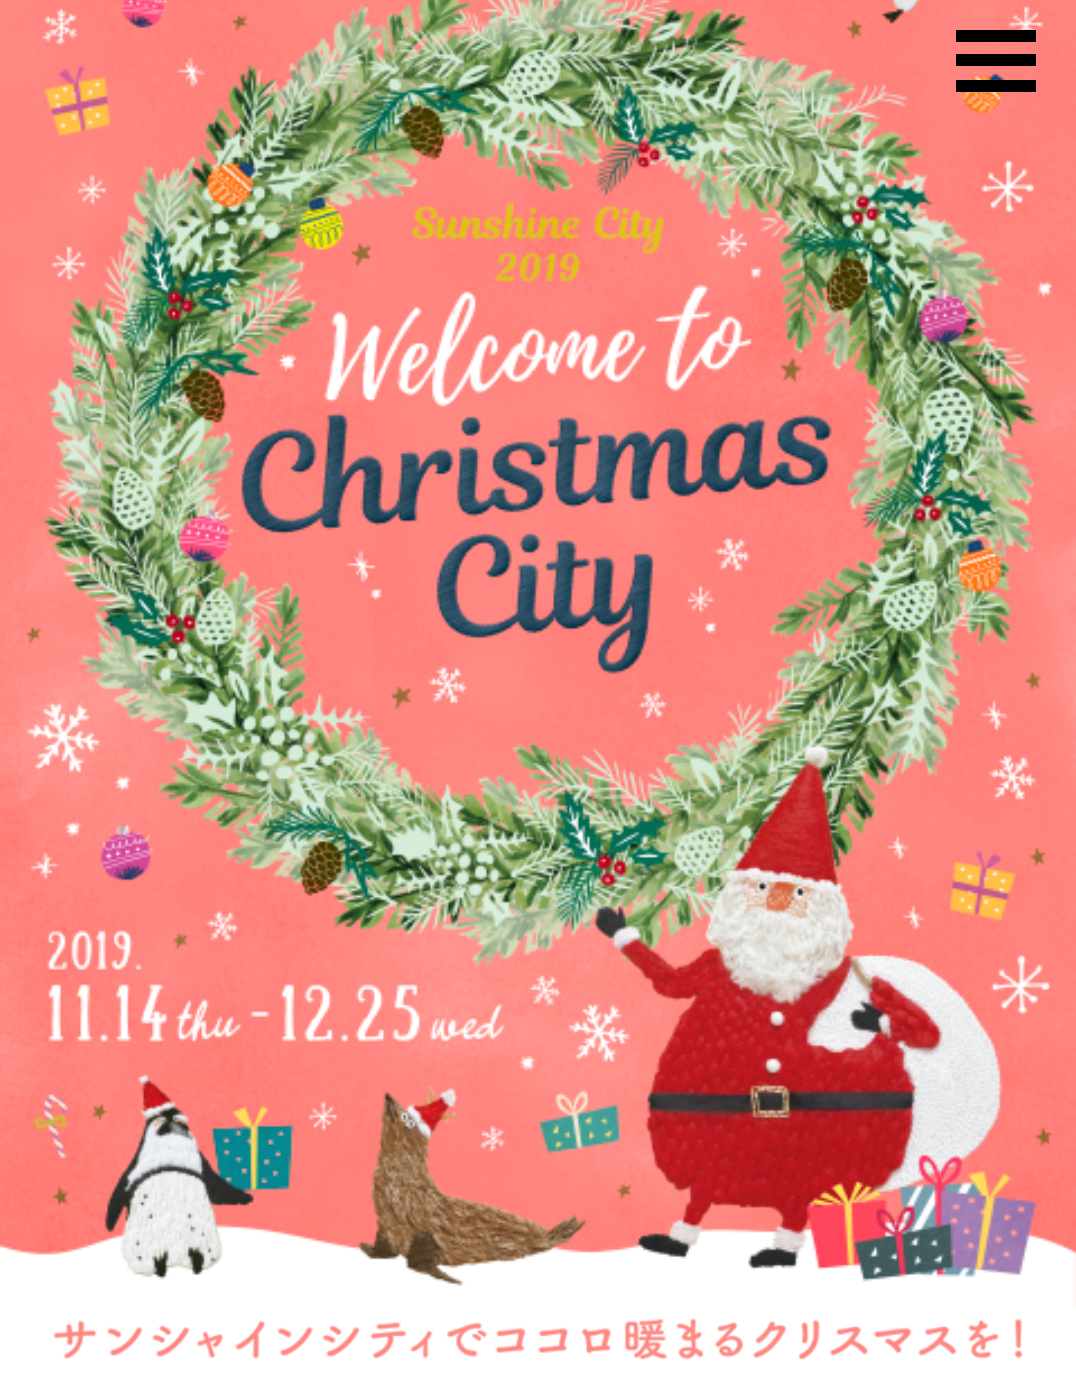 サンシャインシティ 2019 Welcome to Christmas City